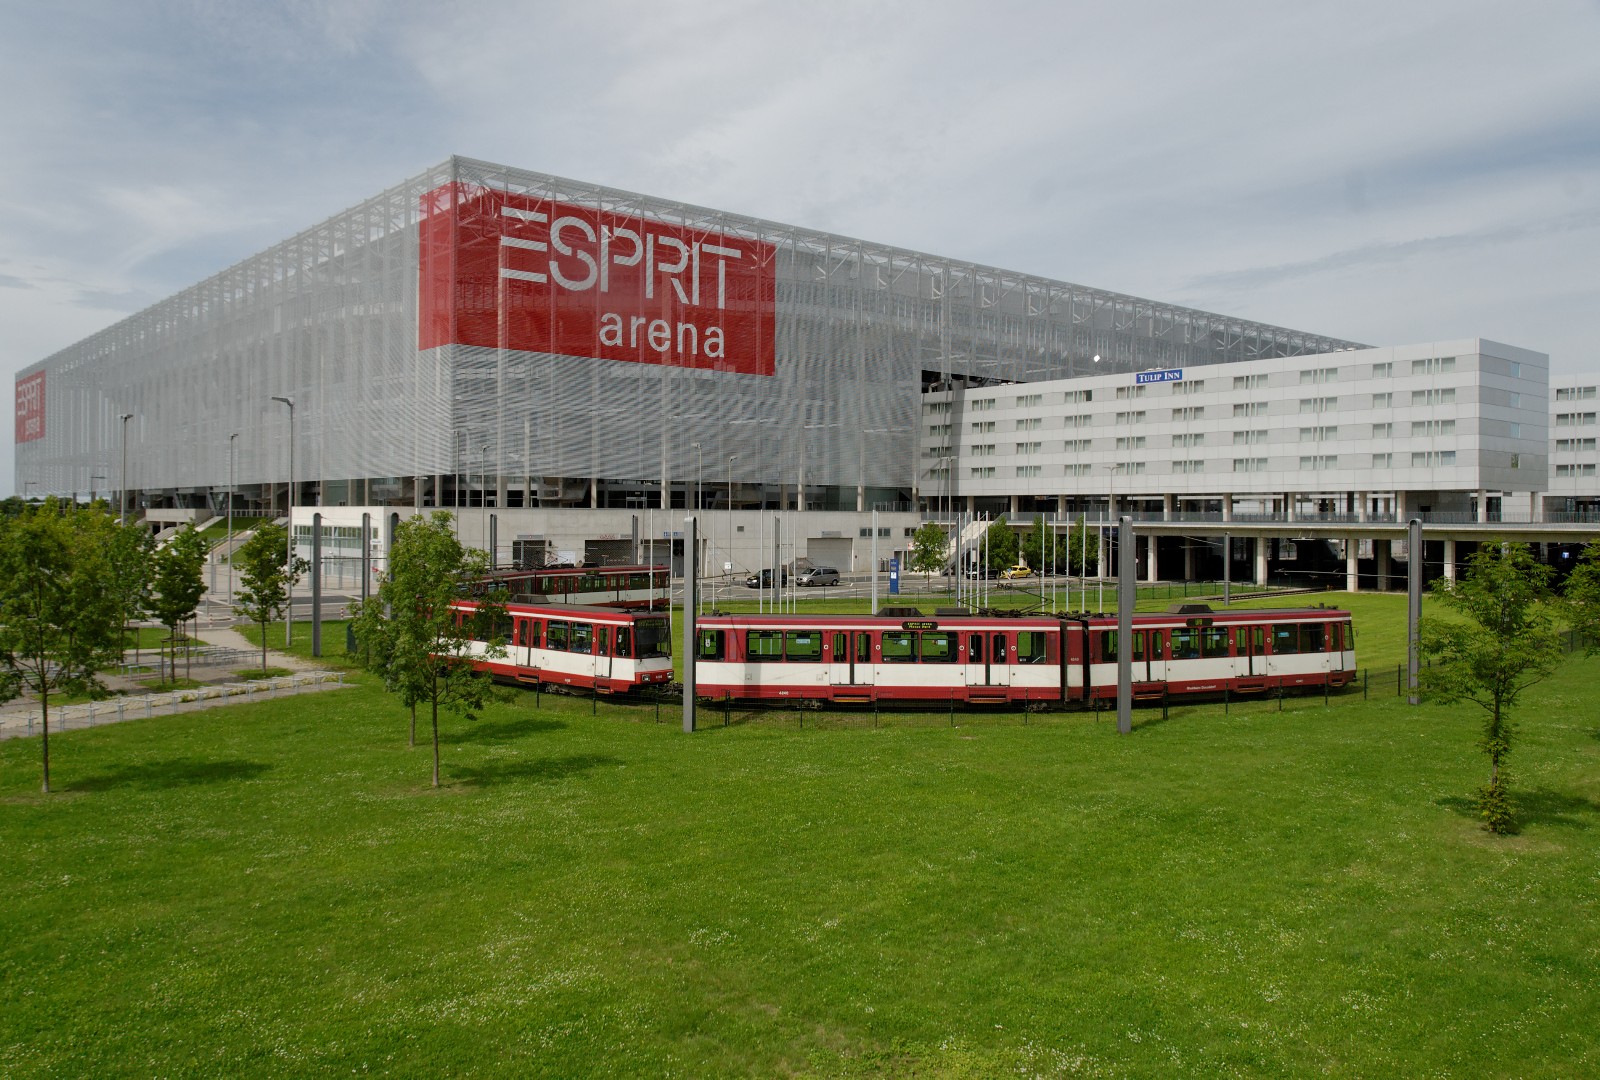 Die ESPRIT arena, heute MERKUR SPIEL-ARENA, ist das Fußballstadion von Fortuna Düsseldorf. Über 50.000 Menschen finden hier regelmäßig Platz, um Sportevents, Konzerte und andere Veranstaltungen zu sehen. Informationen zu Geschichte und Namen der Arena gibt es hier.